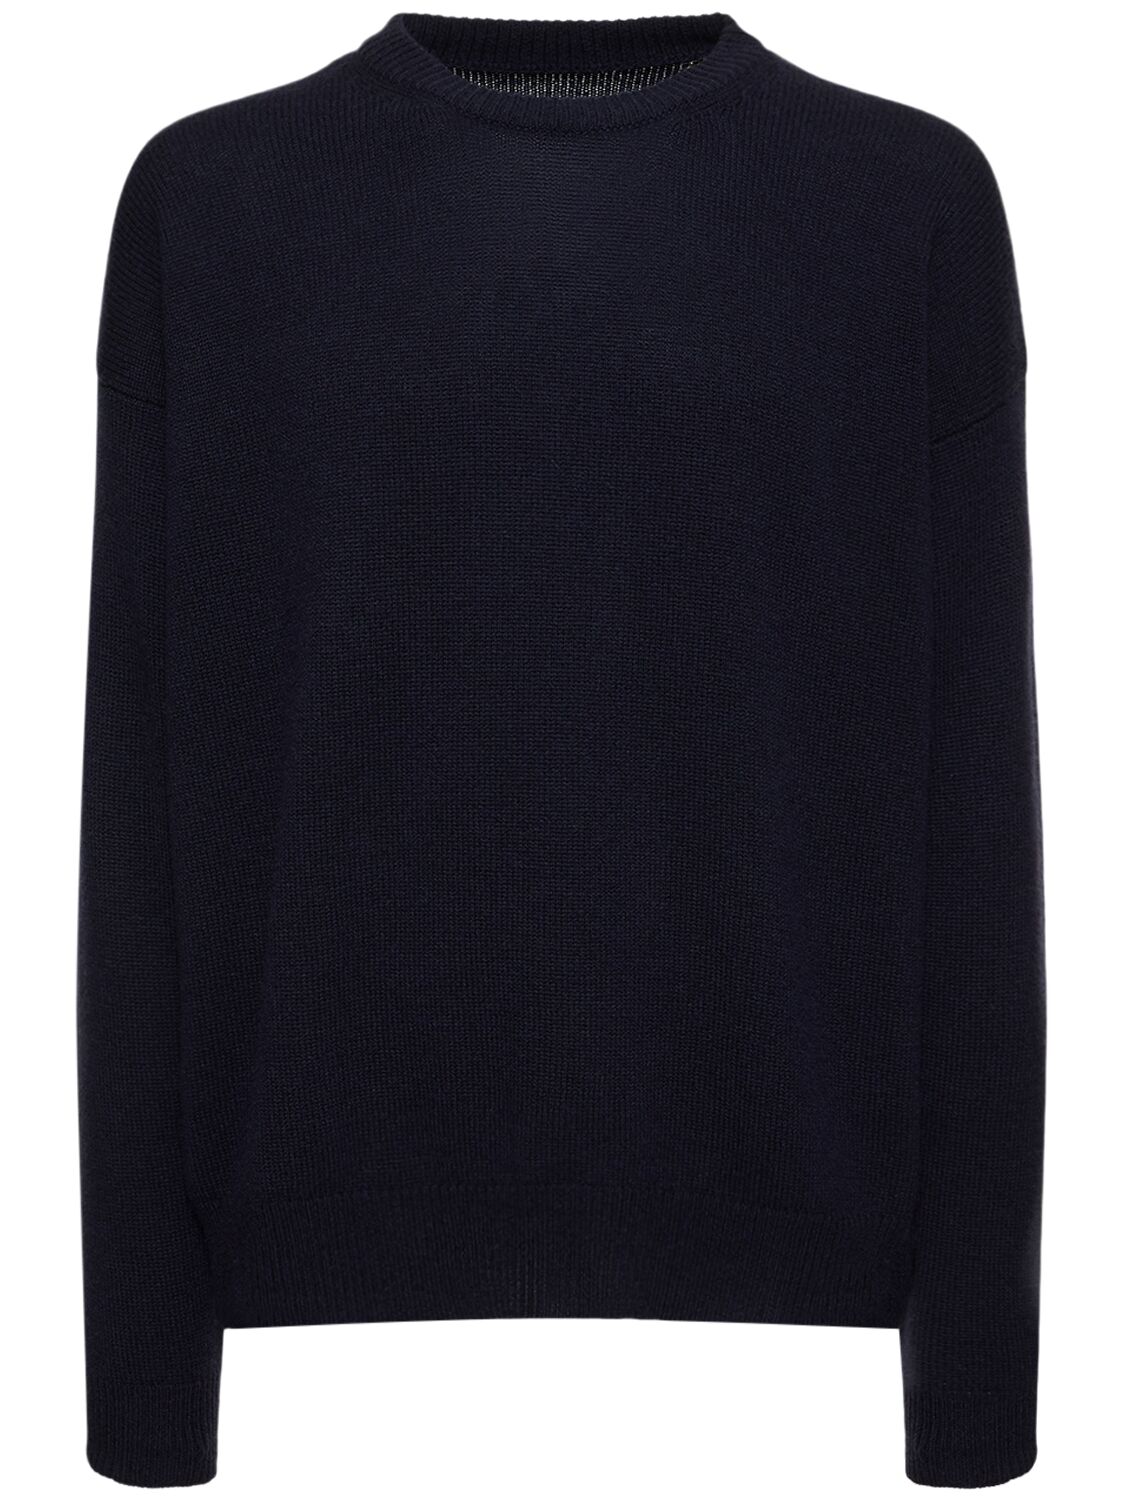 Boxy Cashmere Sweater